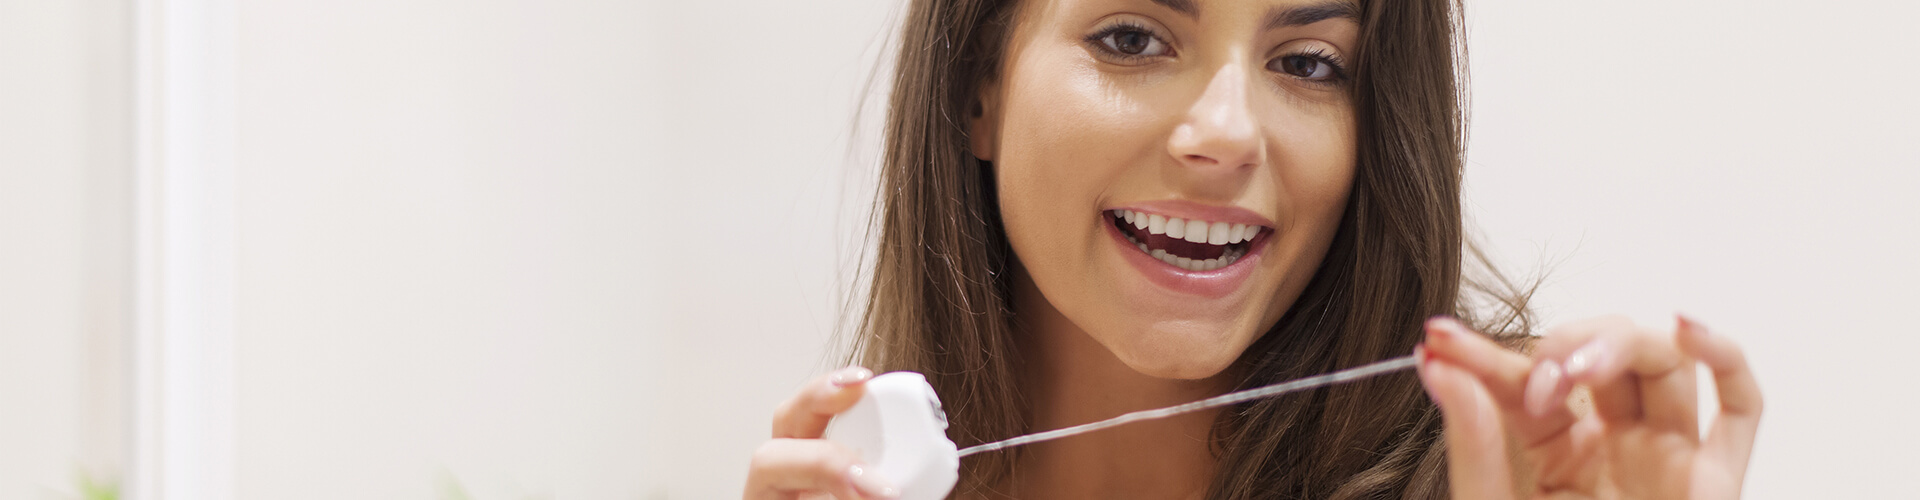 Diş İpi Kullanımı ve Faydaları, diş ipi nasıl kullanılır